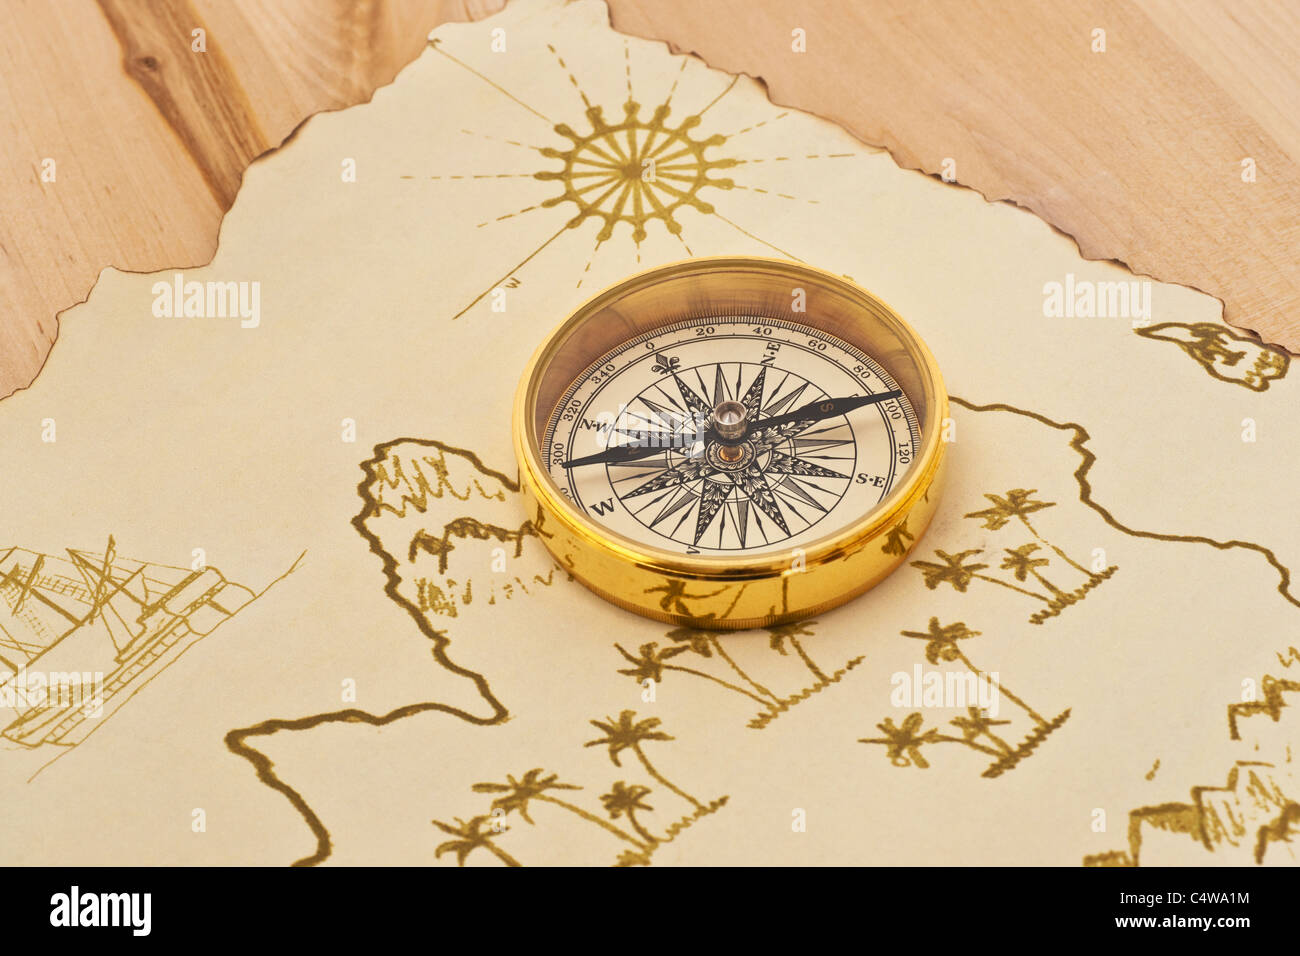 ein Kompass liegt auf einer alten Schatzkarte | a compass lies on an old treasure map Stock Photo